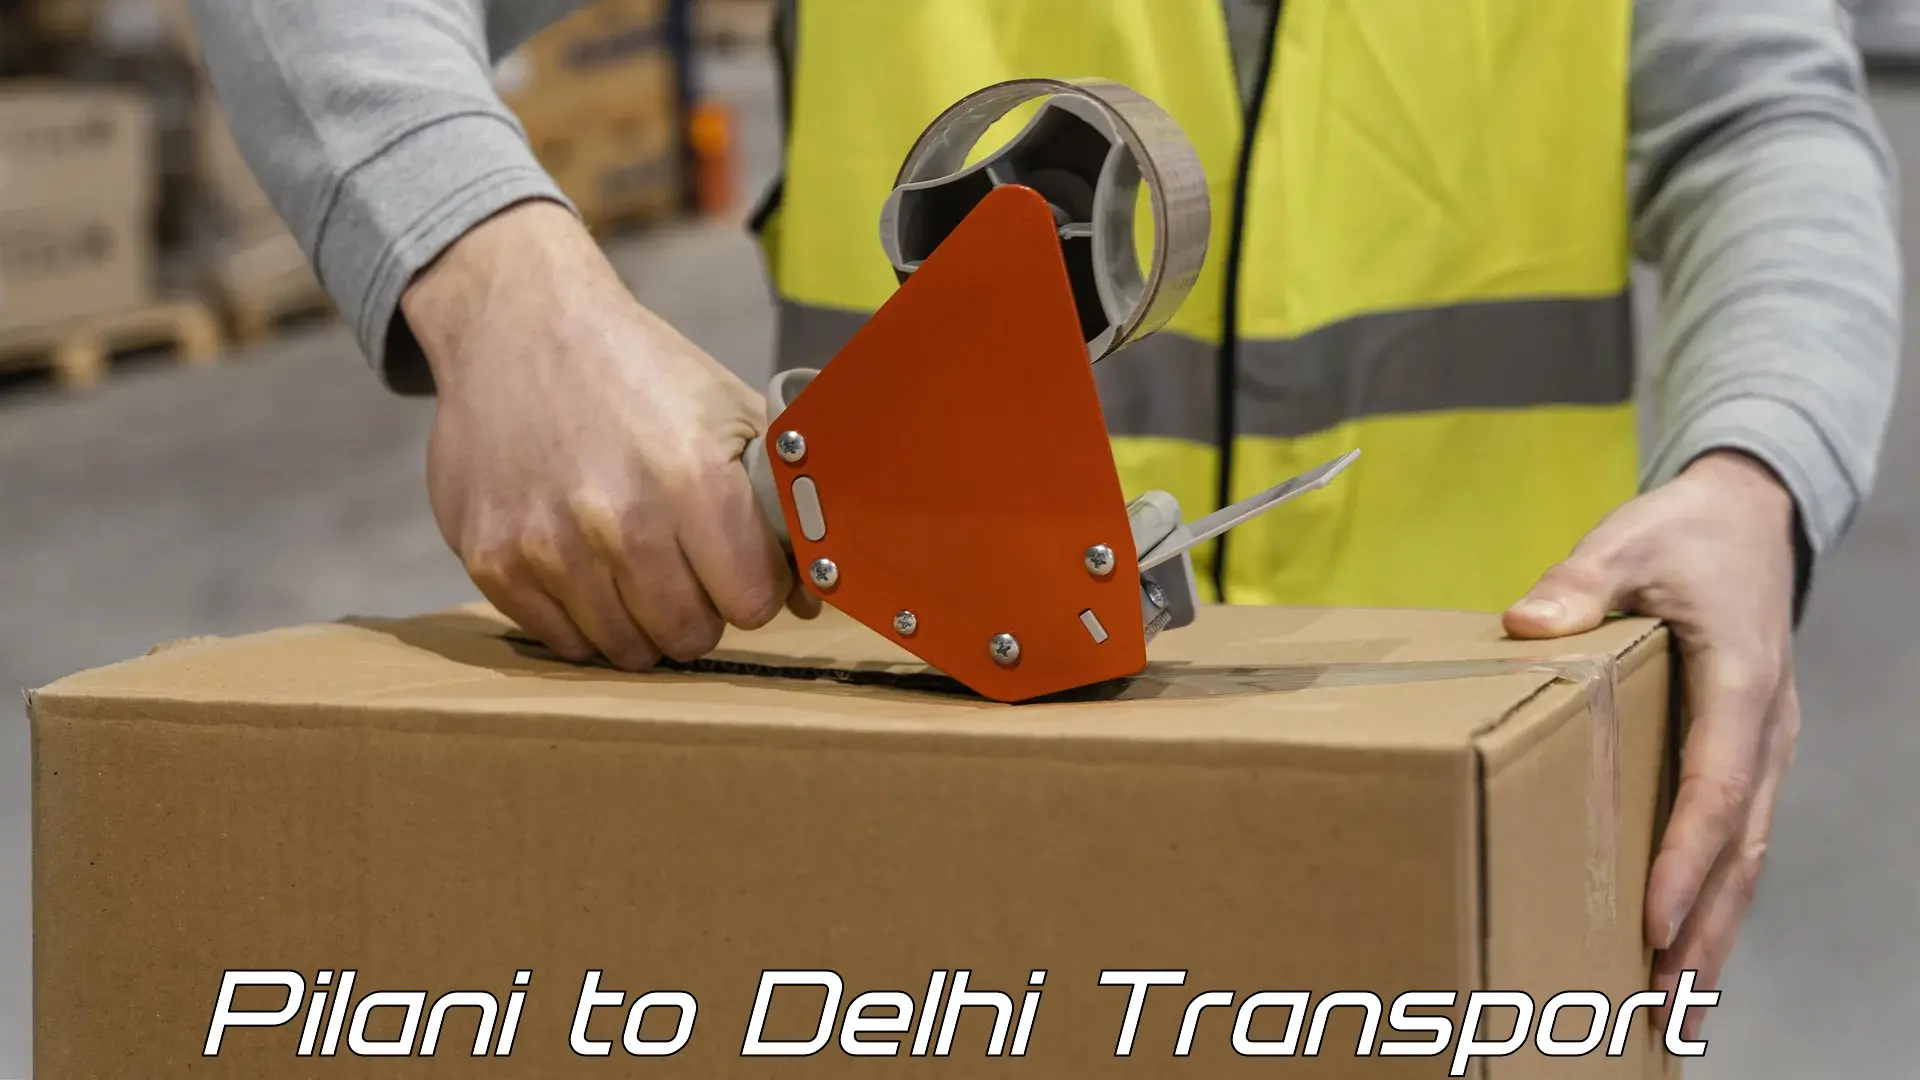 Container transport service Pilani to Delhi